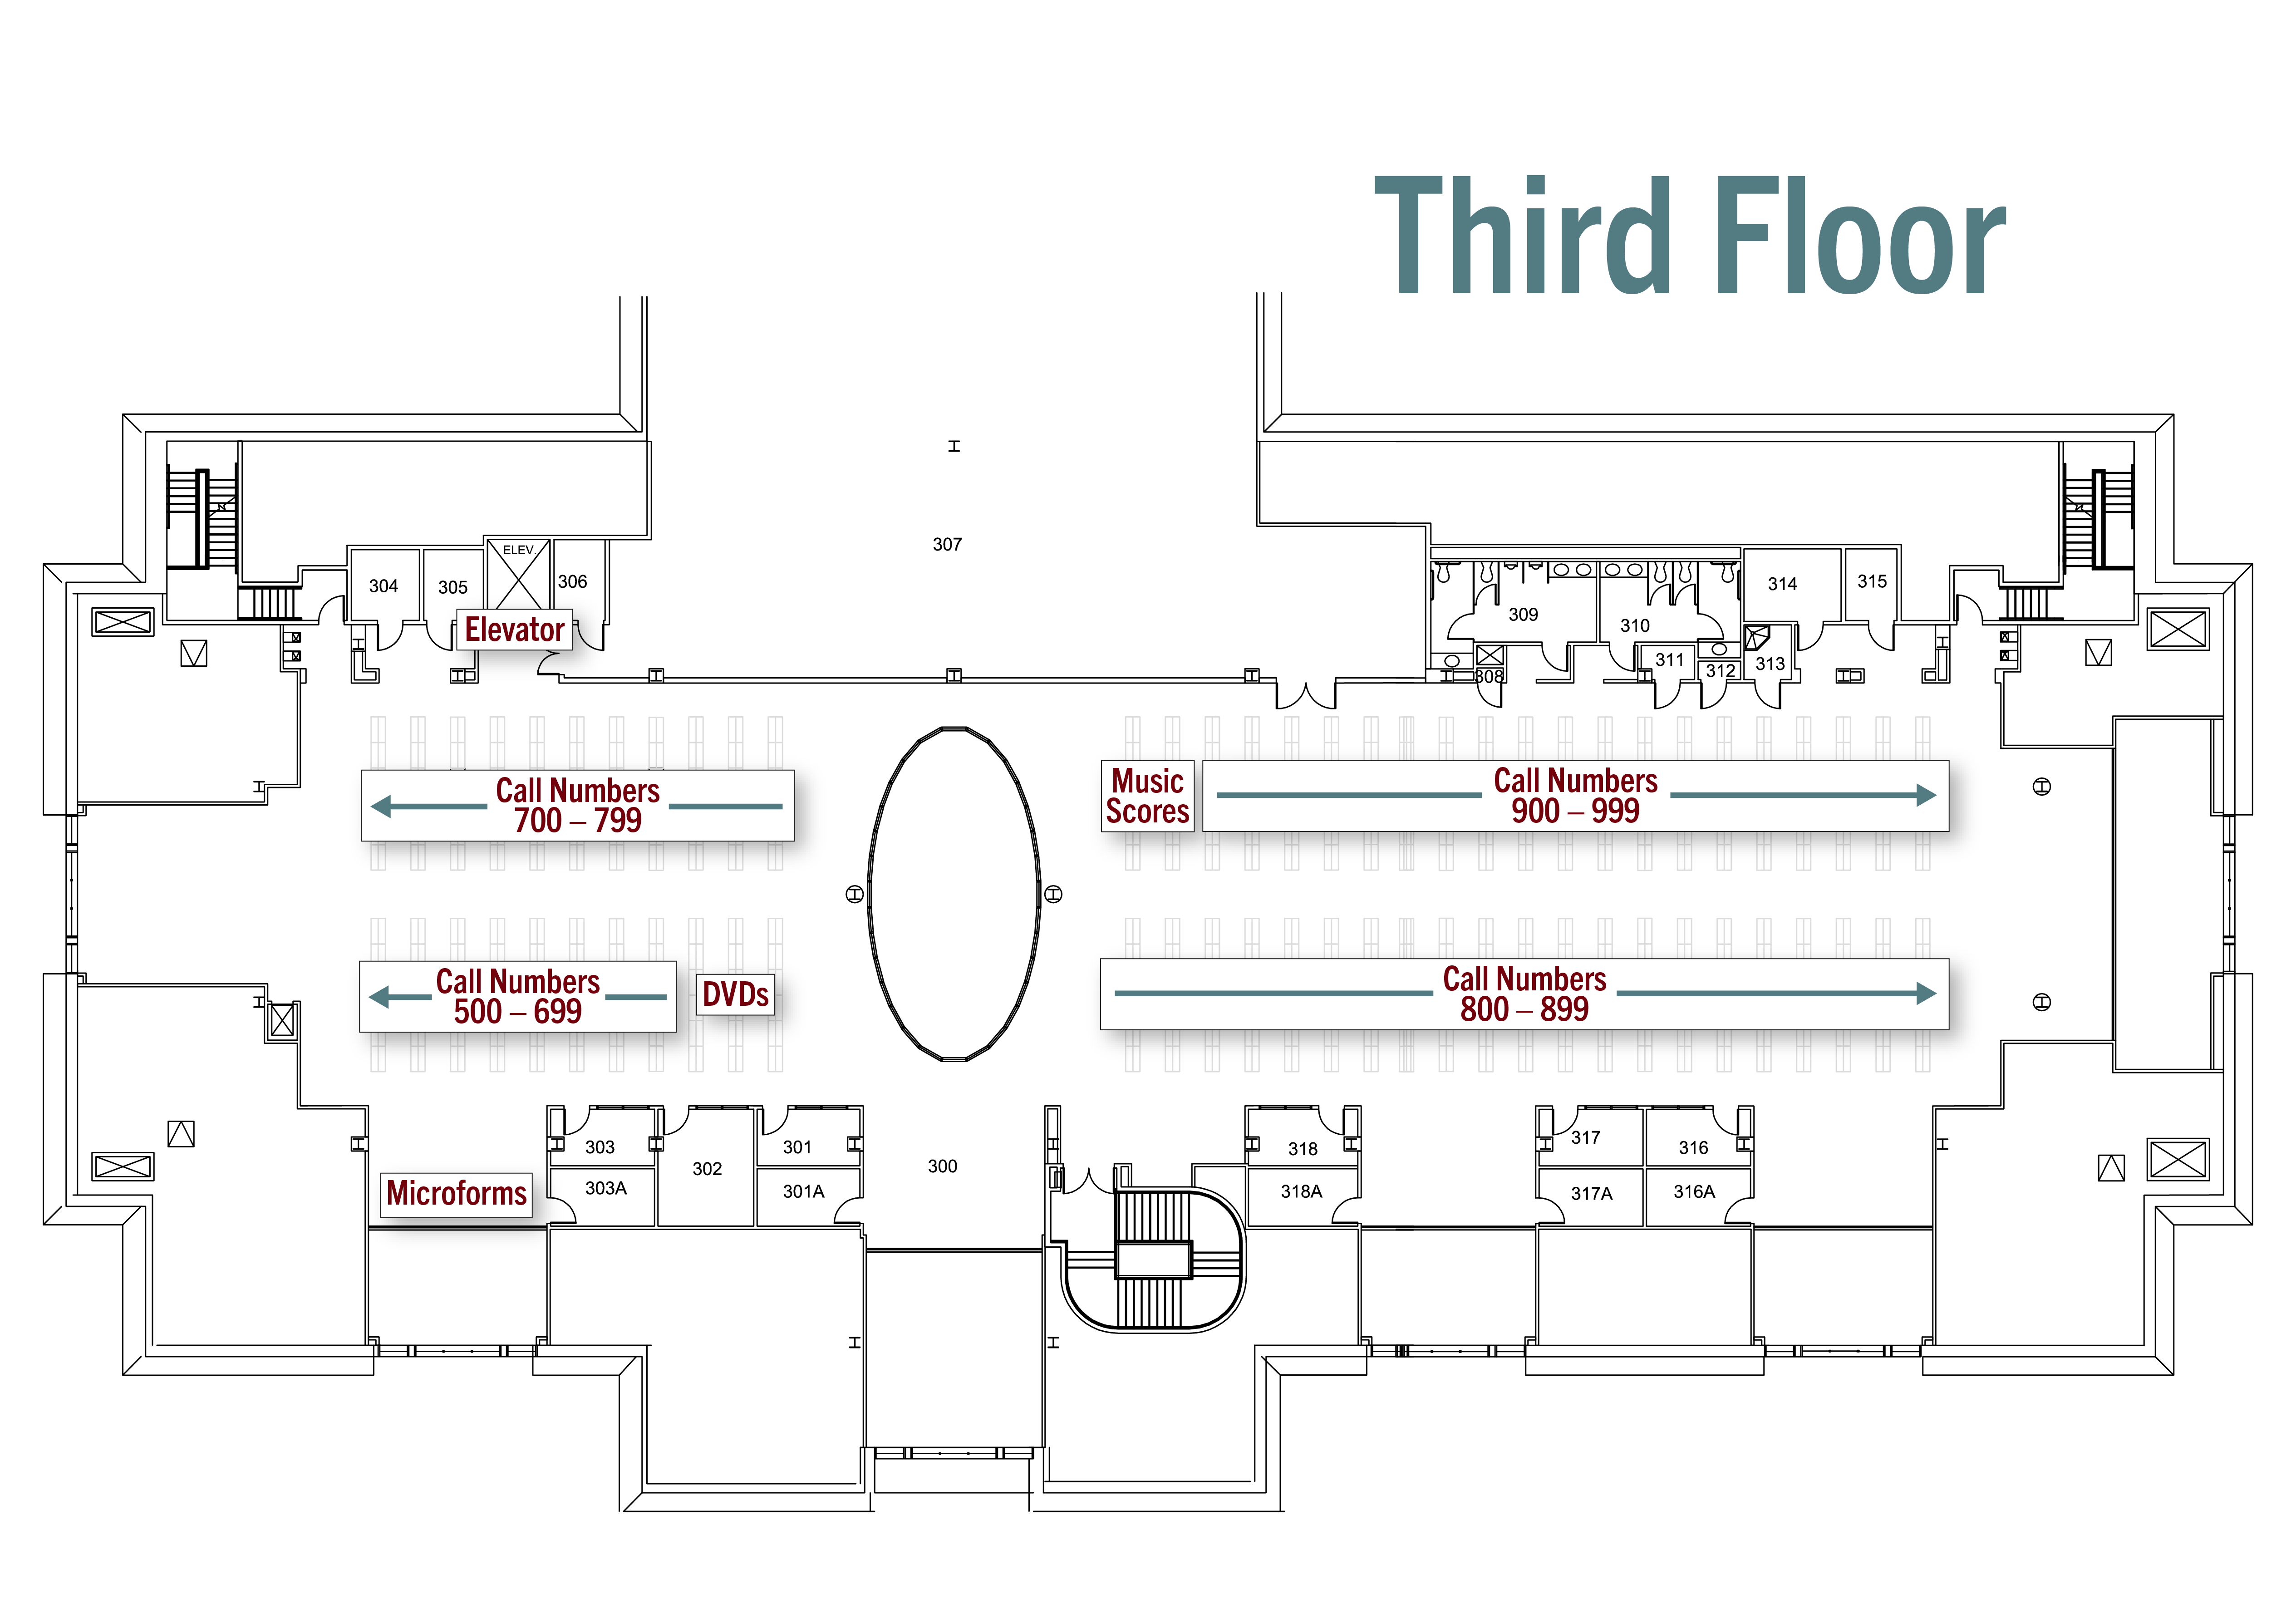 Floor plan of Belk Library third floor.